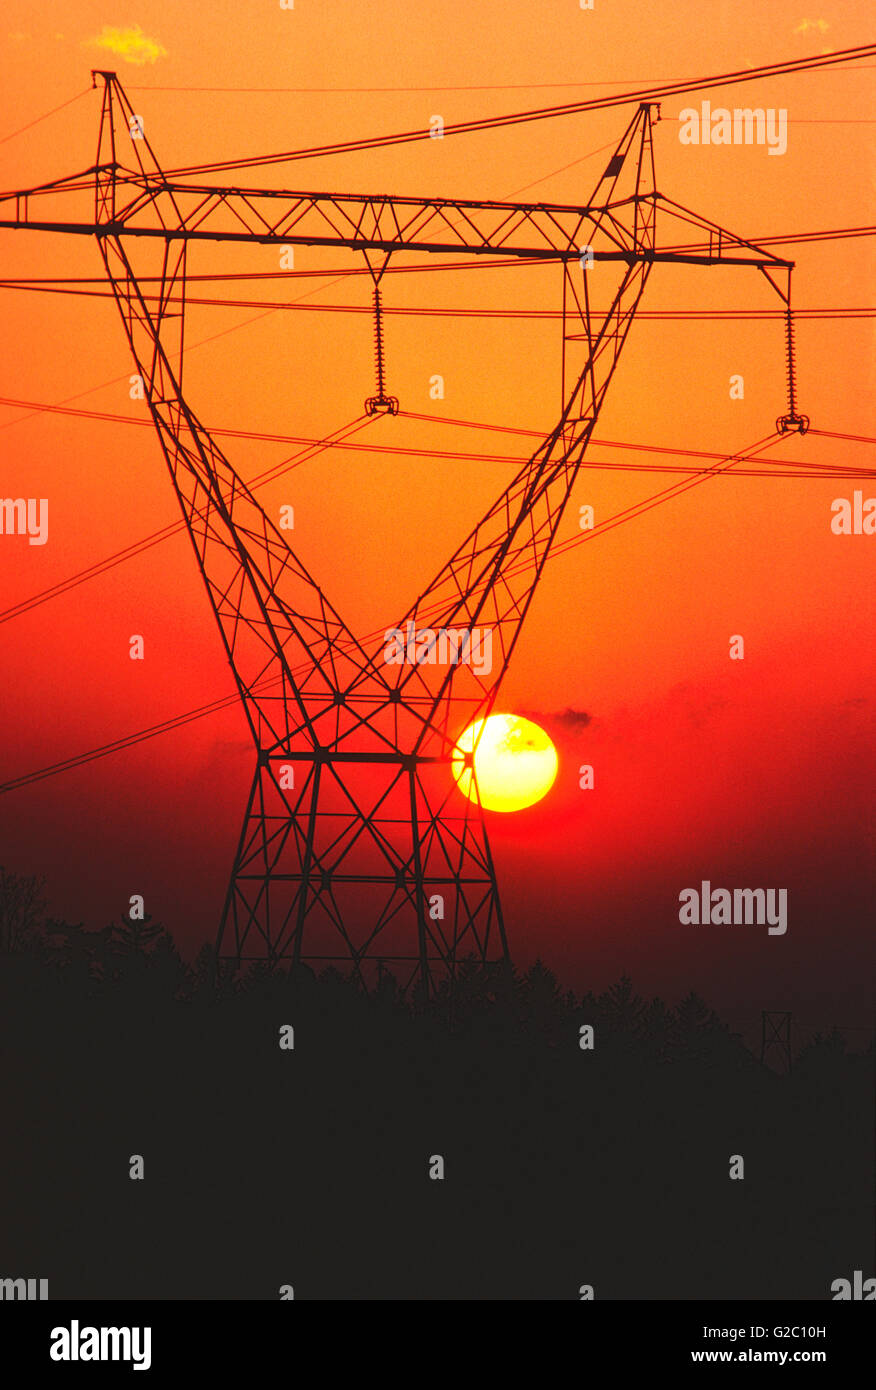 Il tramonto visto attraverso la trasmissione elettrica di linee di potenza e la torre, Upstate New York, Stati Uniti d'America Foto Stock